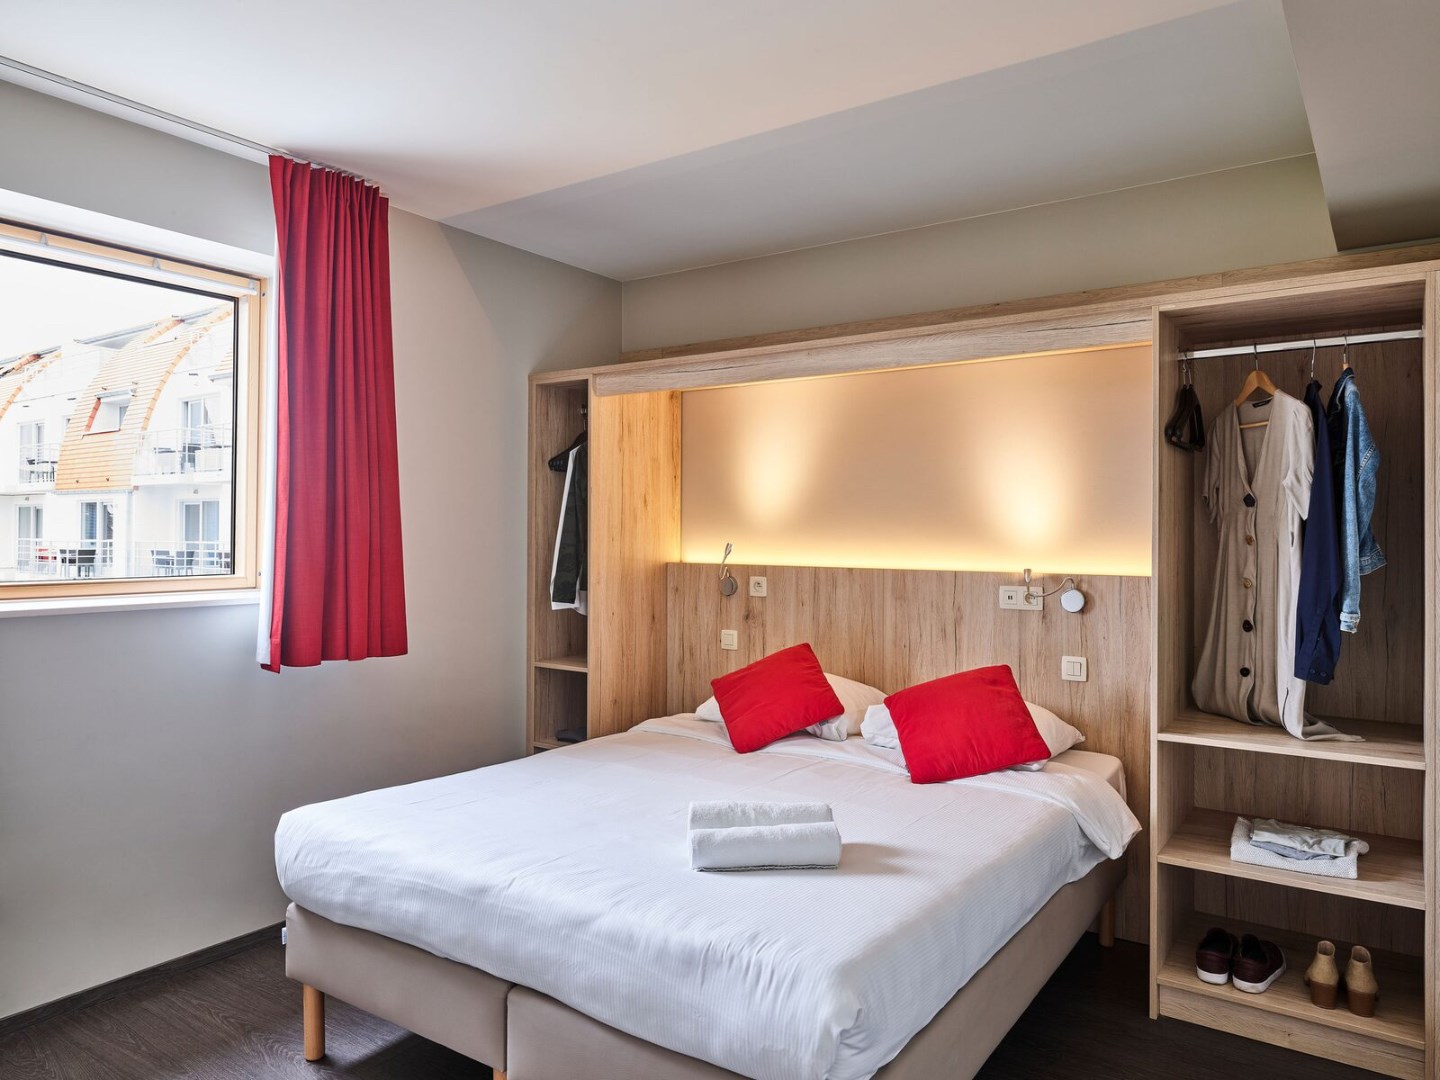 Business flat met aparte slaapkamer, slaaphoek en zetelbed (6p) in Holiday Suites Zeebrugge 